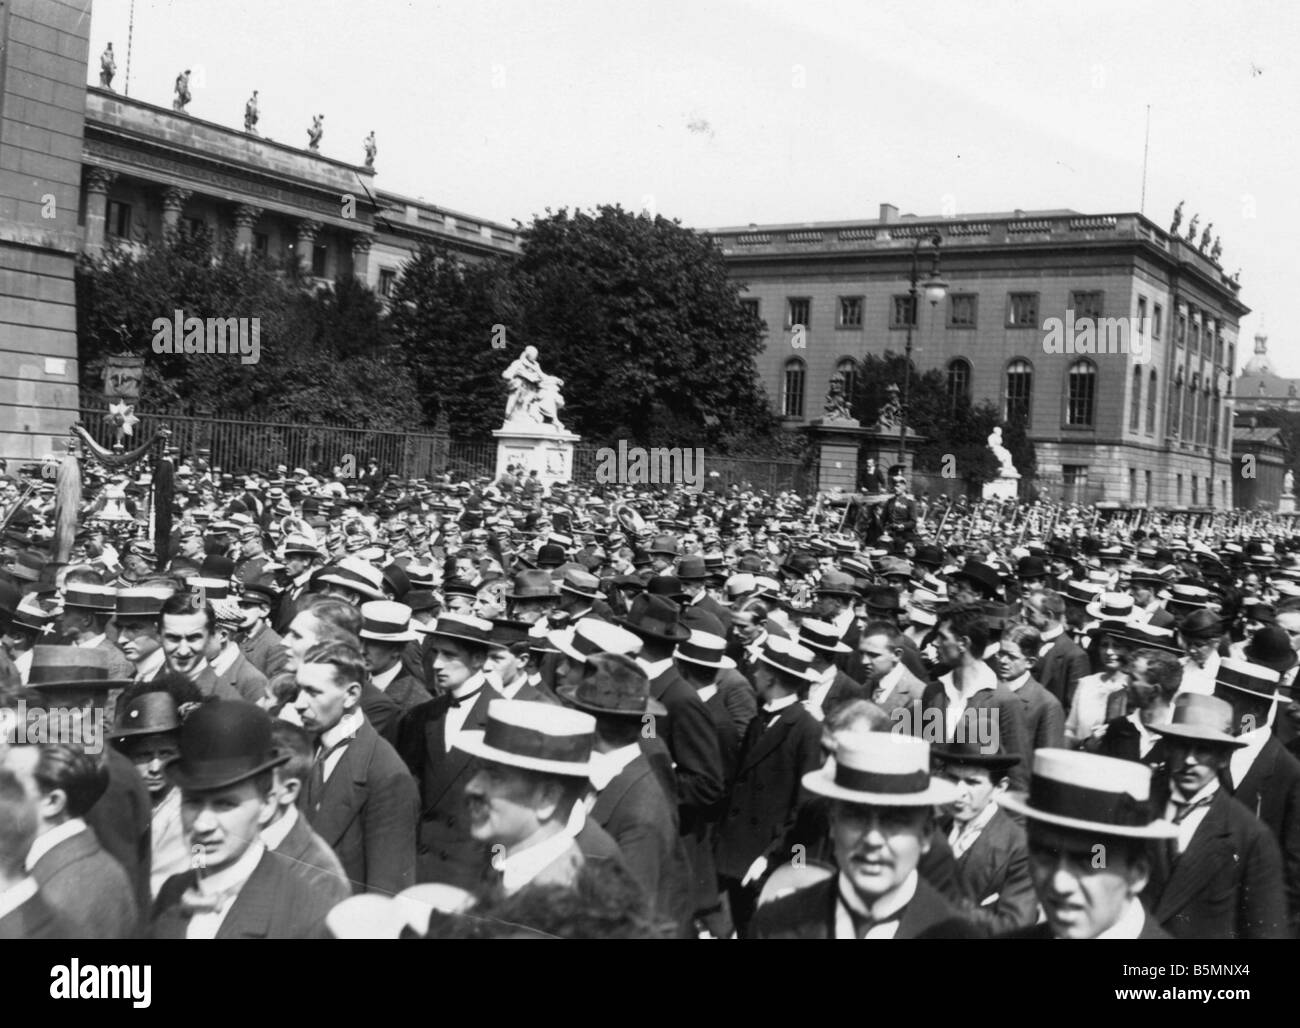 8 1914 8 1 A3 Movilización 1914 Berlín Unter d Linden Berlin el 1 de agosto de 1914 1 Guerra Mundial la movilización de una multitud observa la evolución Foto de stock